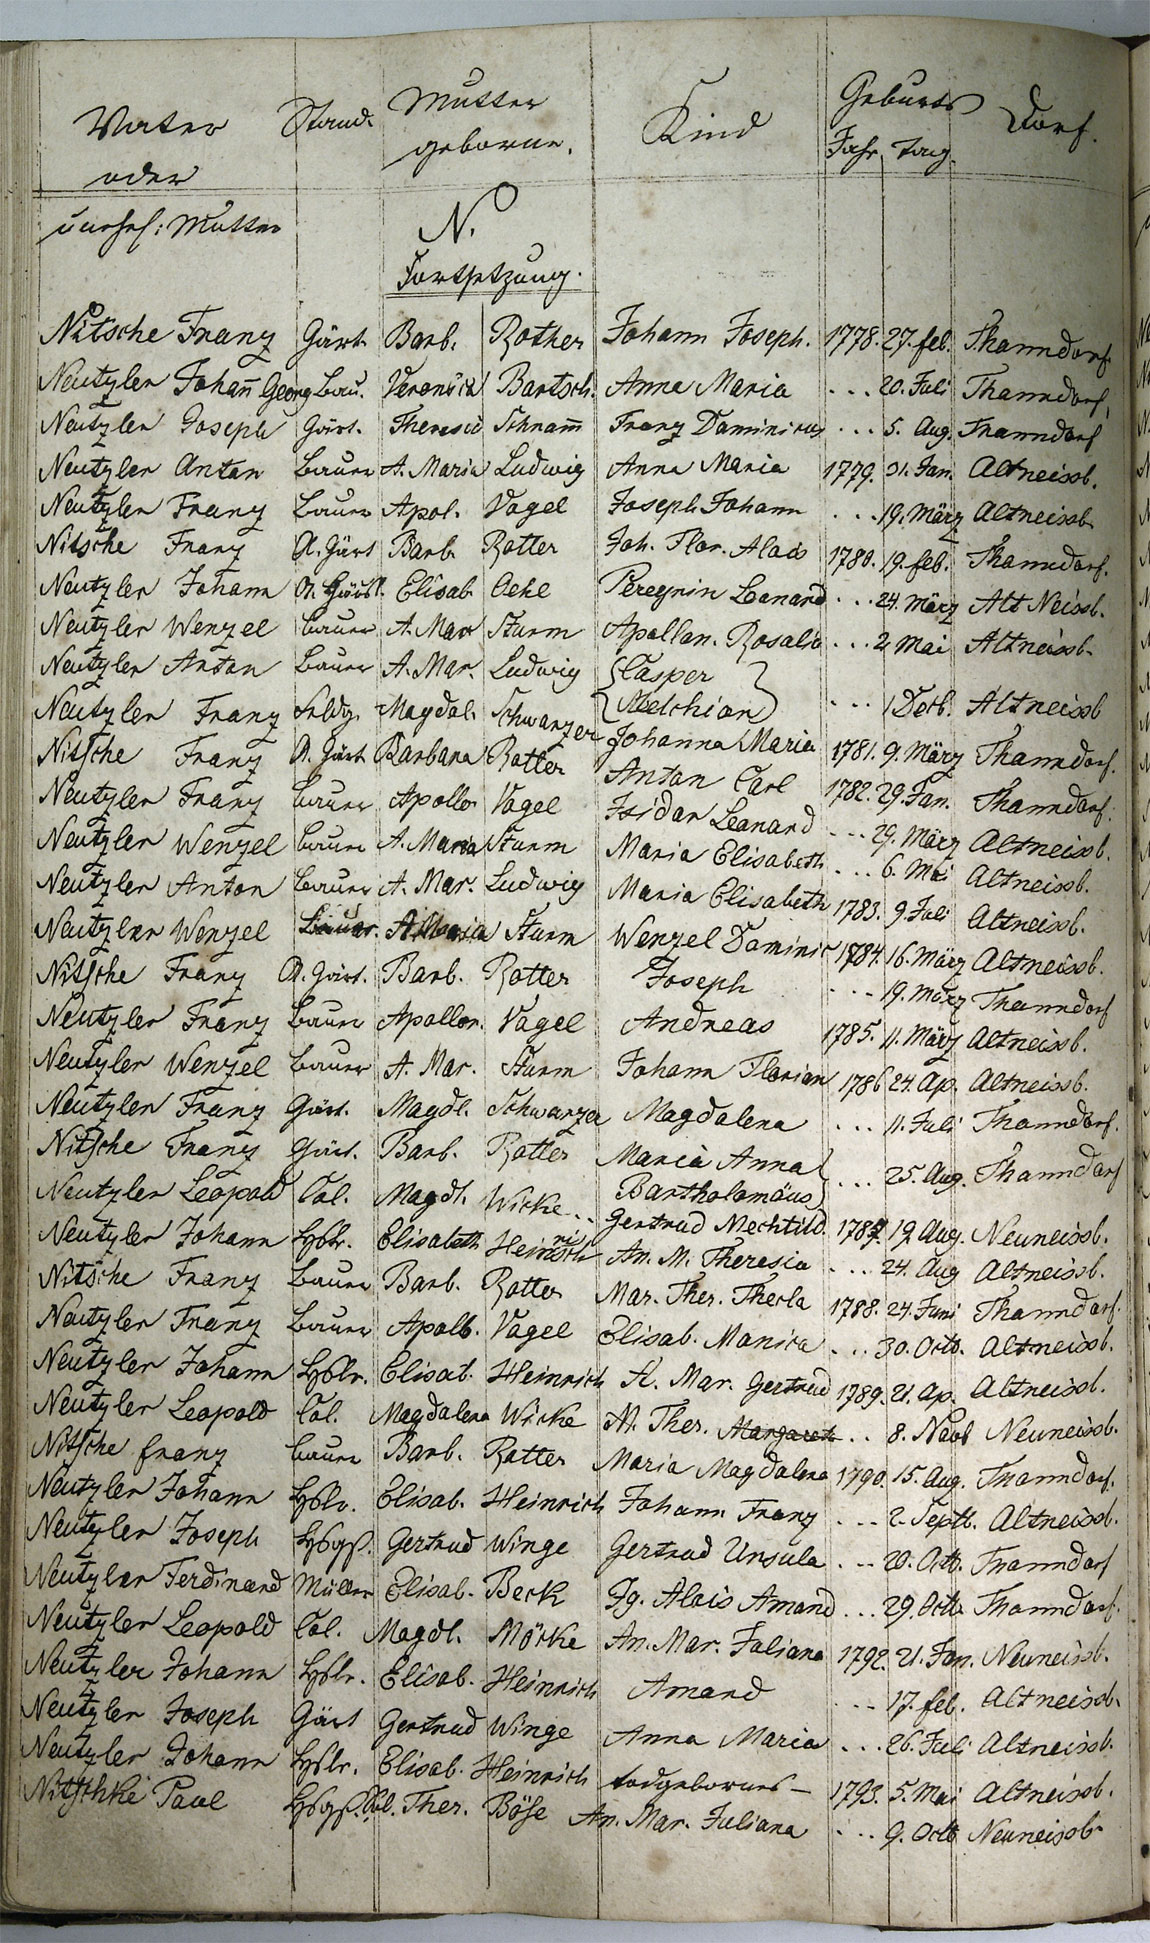 Taufregister 1770 - 1889 Seite 106